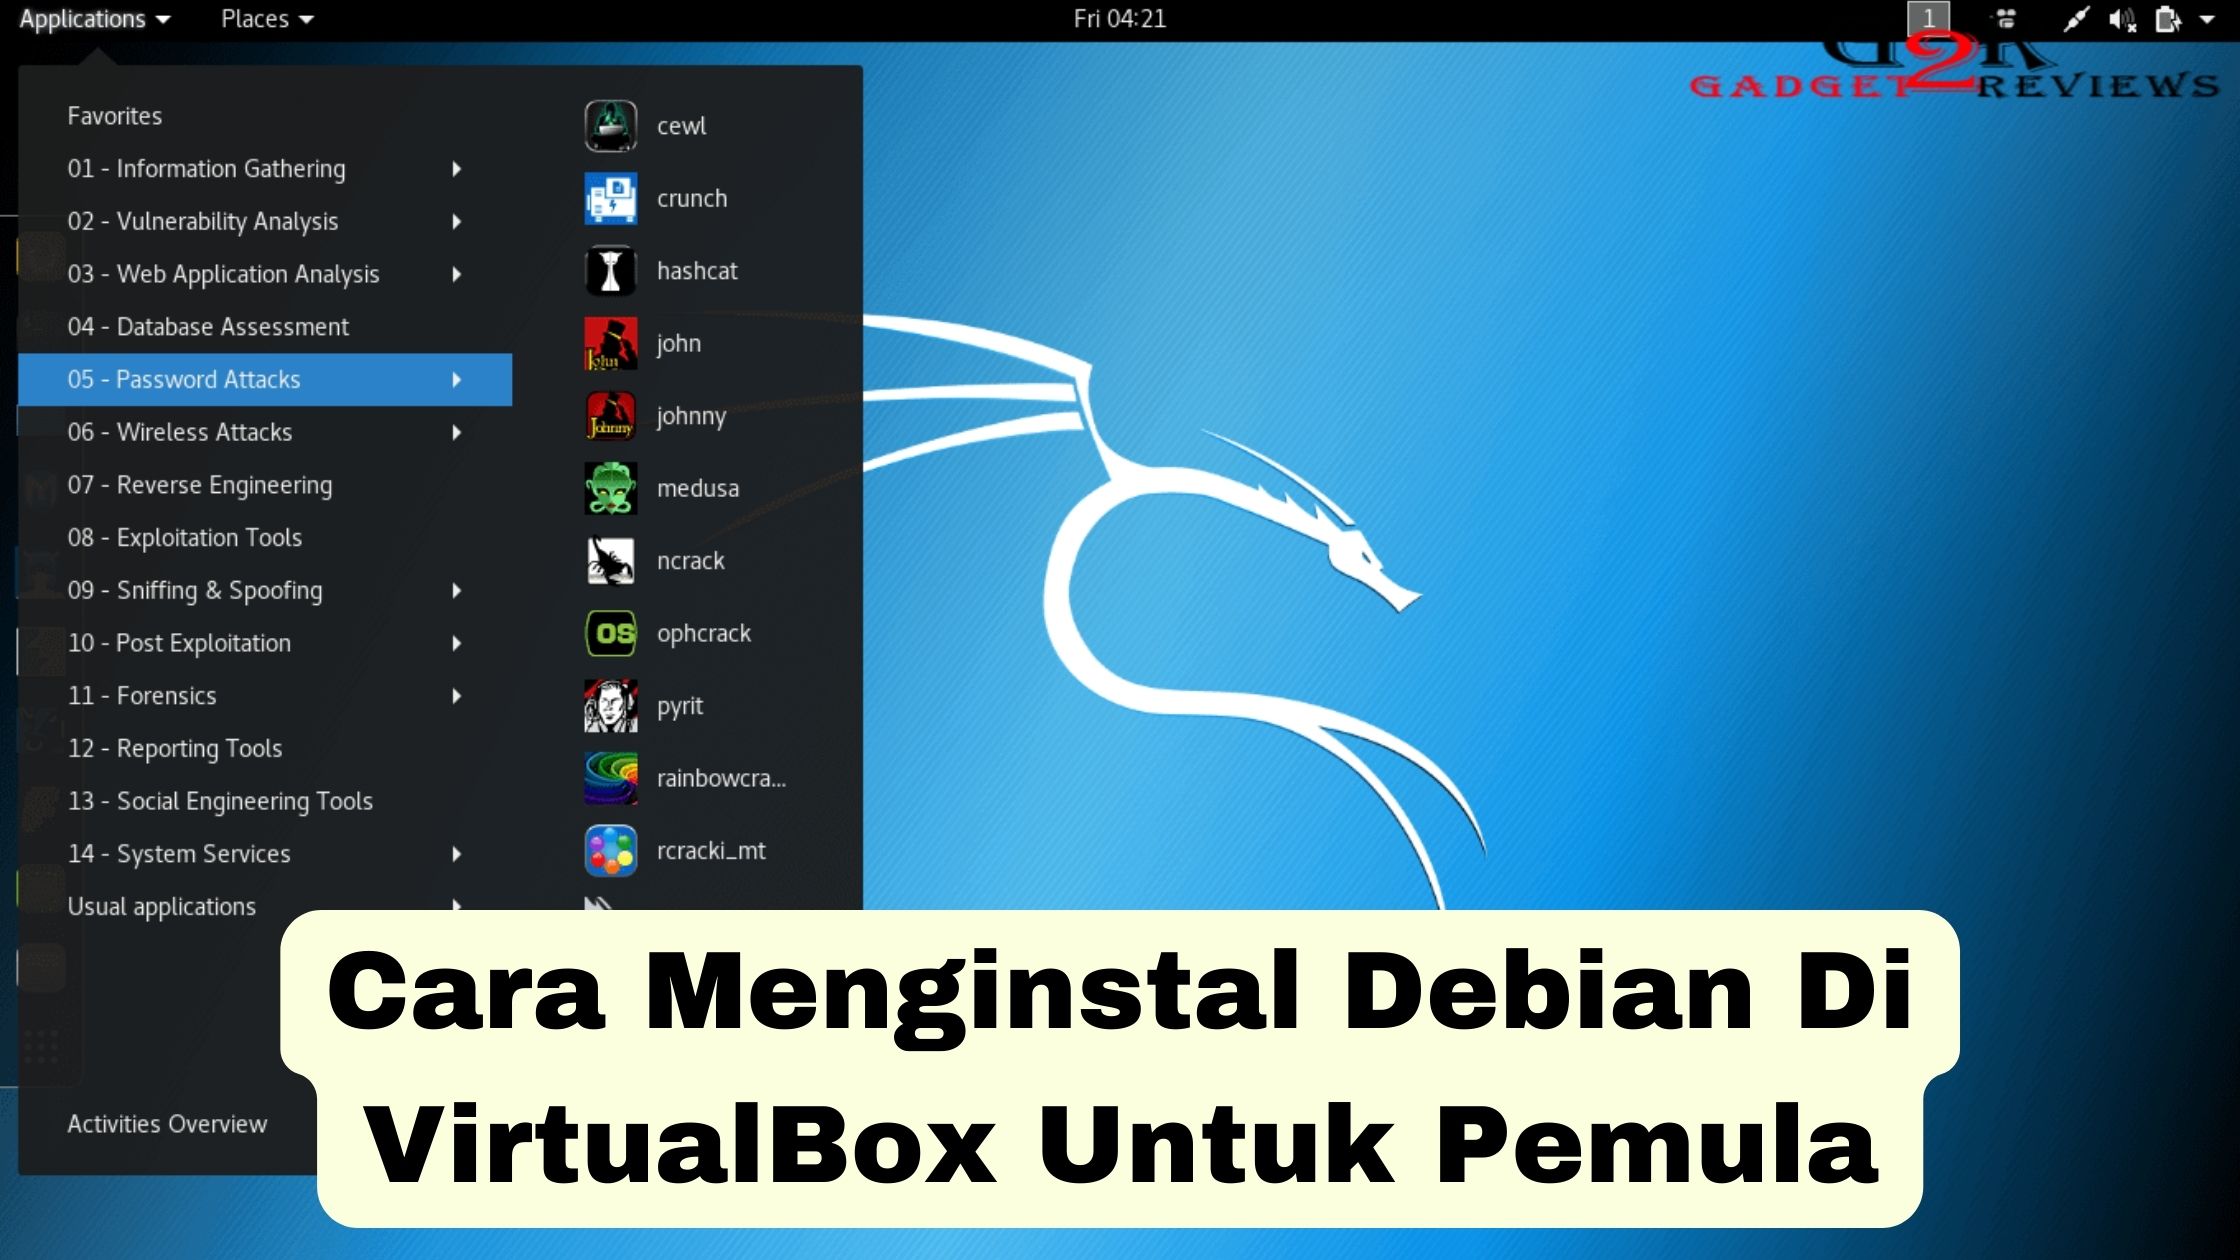 Cara Menginstal Debian Di Virtualbox Gadget Reviews Com